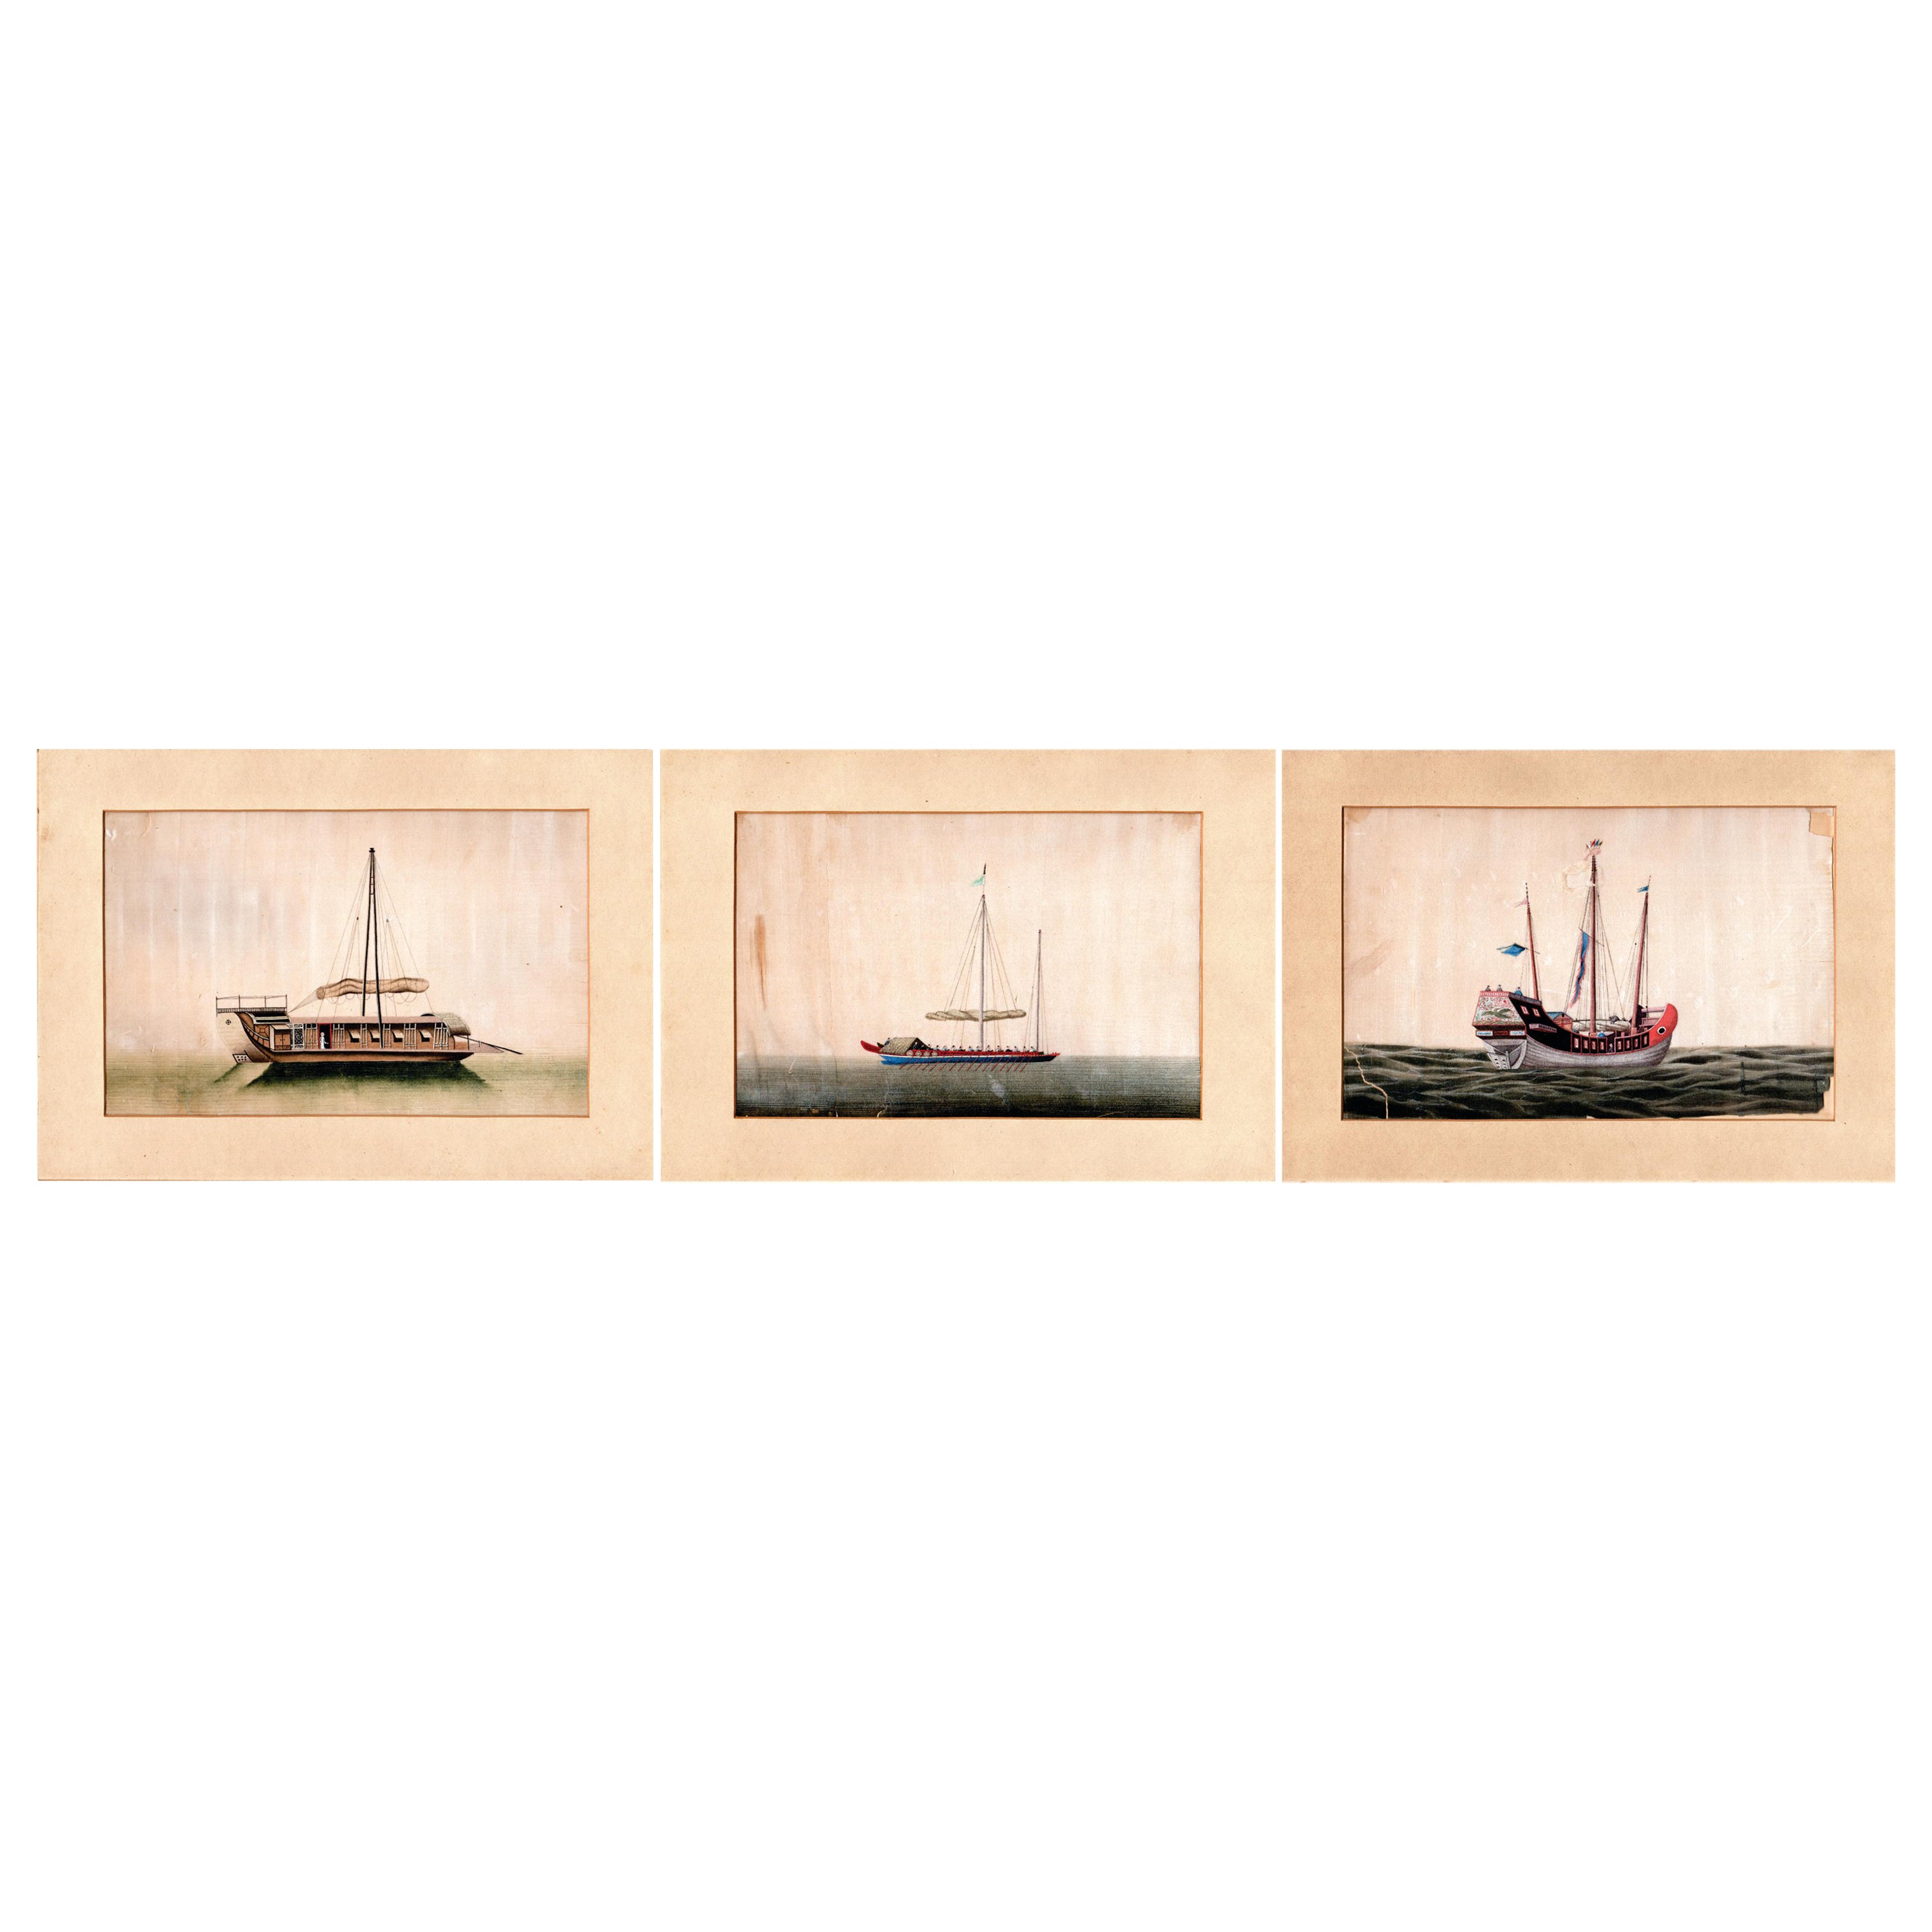 Ensemble de trois peintures à la moelle épinière d'exportation chinoise du XIXe siècle représentant des jonques